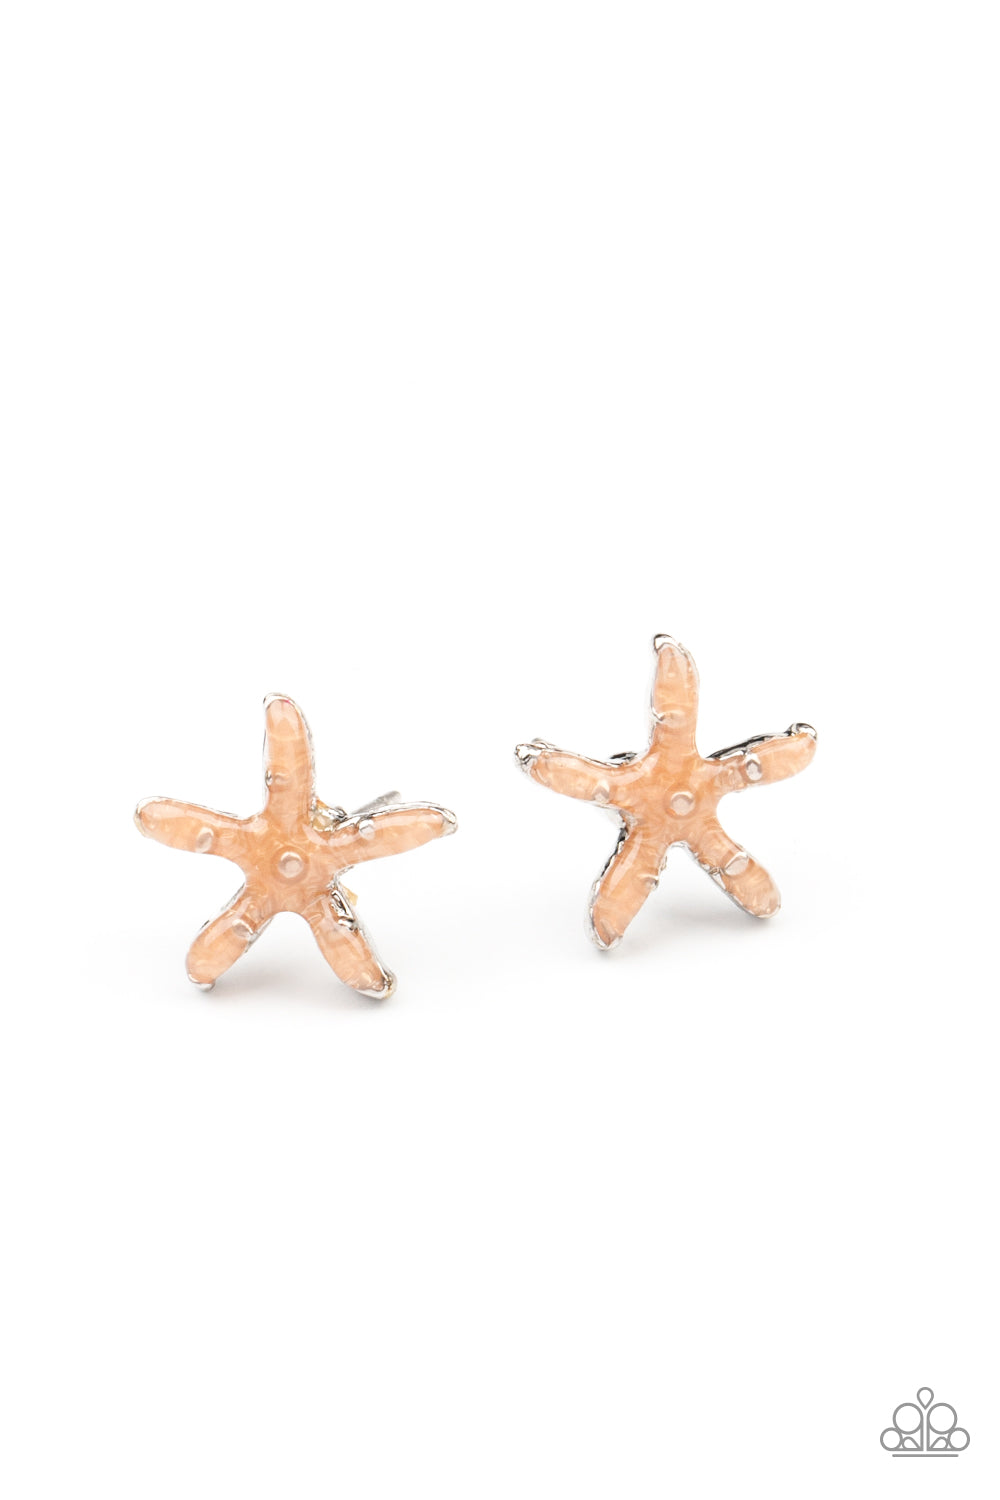 Paparazzi ♥ Starlet Shimmer Earring Kit P5SS-MTXX-173XX ♥  Starlet Shimmer Earrings